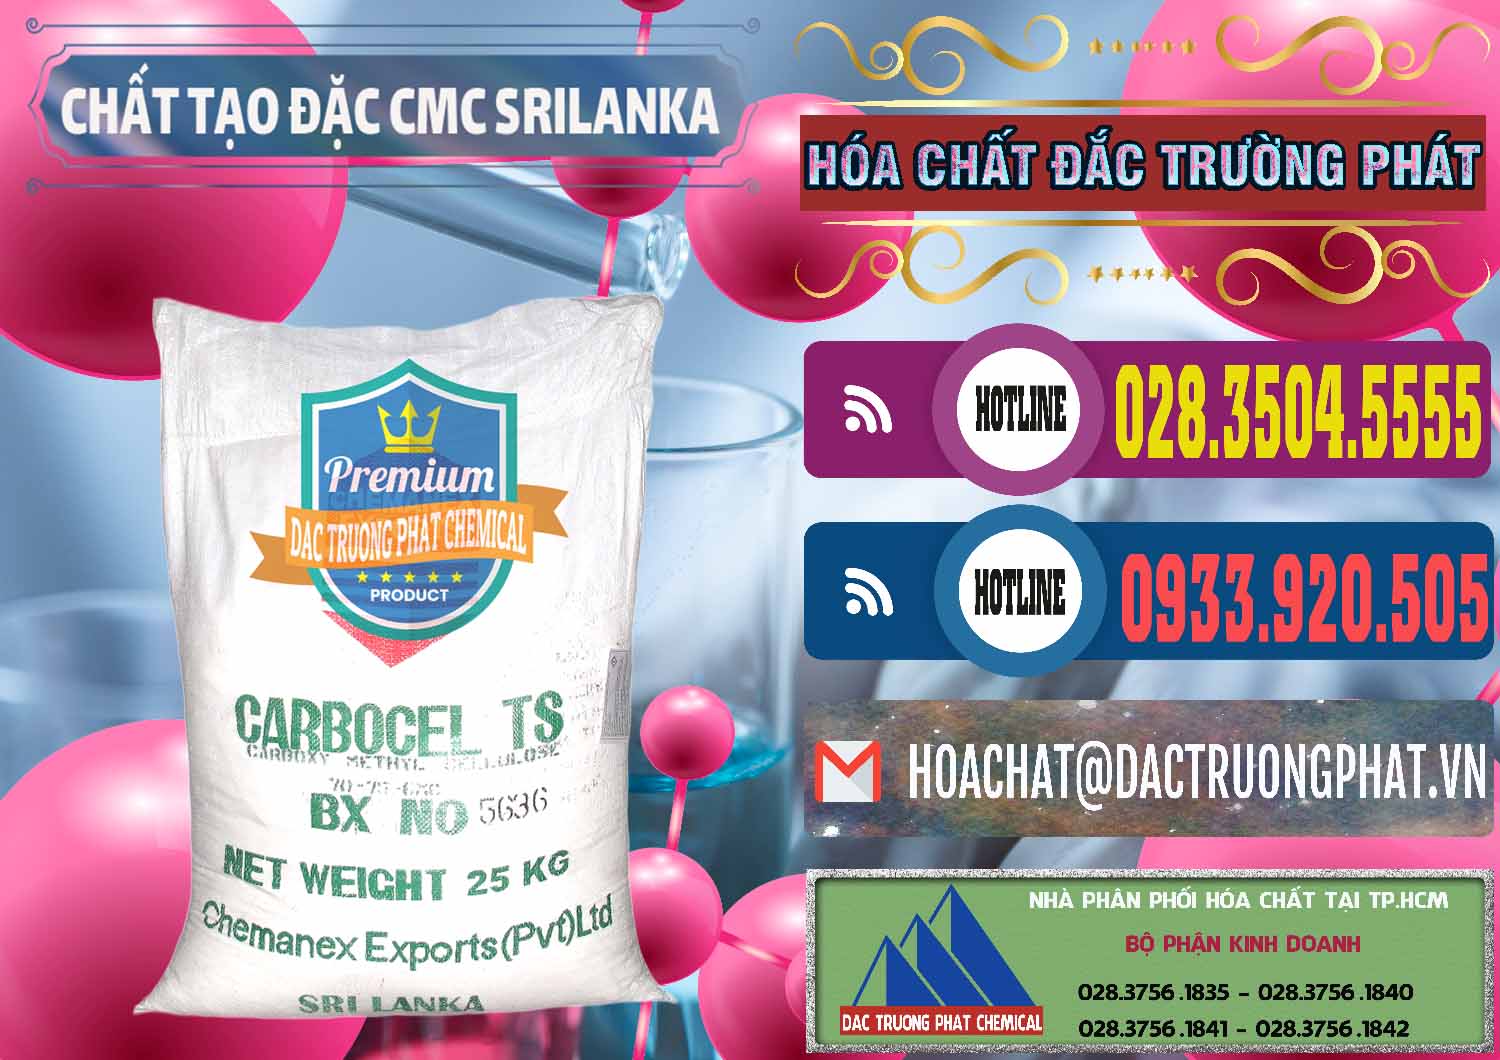 Nơi chuyên bán ( cung ứng ) Chất Tạo Đặc CMC - Carboxyl Methyl Cellulose Srilanka - 0045 - Cty phân phối & cung cấp hóa chất tại TP.HCM - muabanhoachat.com.vn